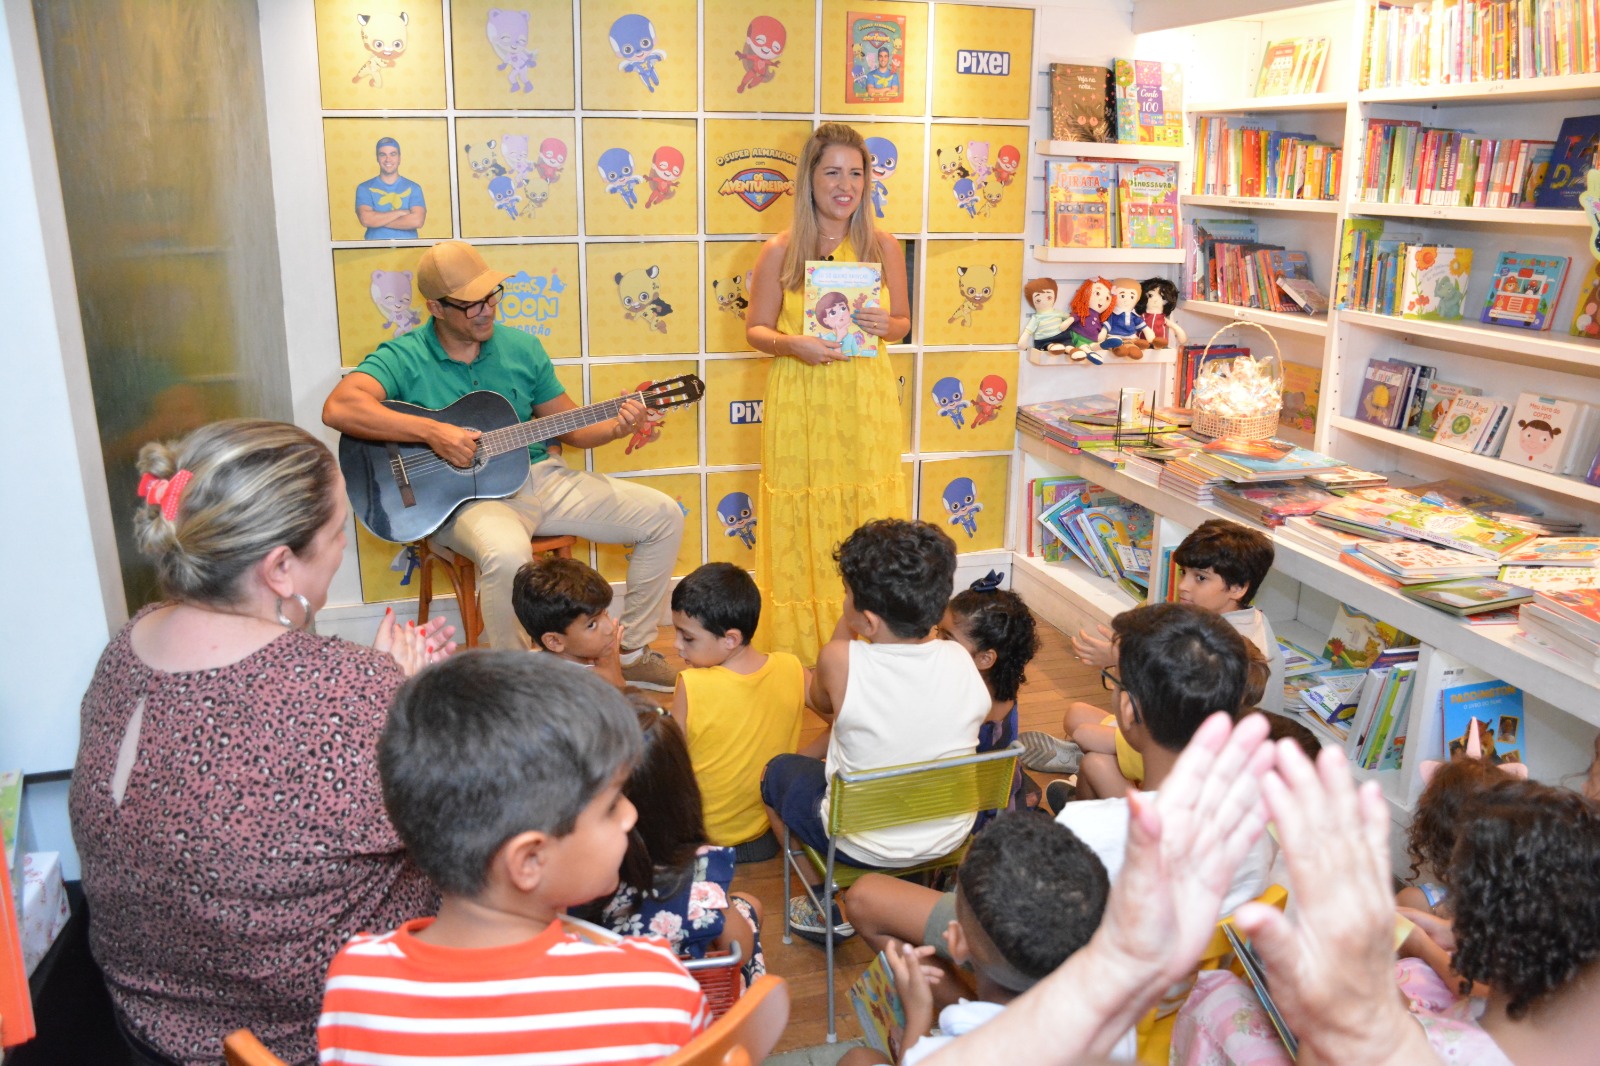 No mês das mulheres livro infantil aborda equidade de gênero de maneira lúdica (Foto: Divulgação)